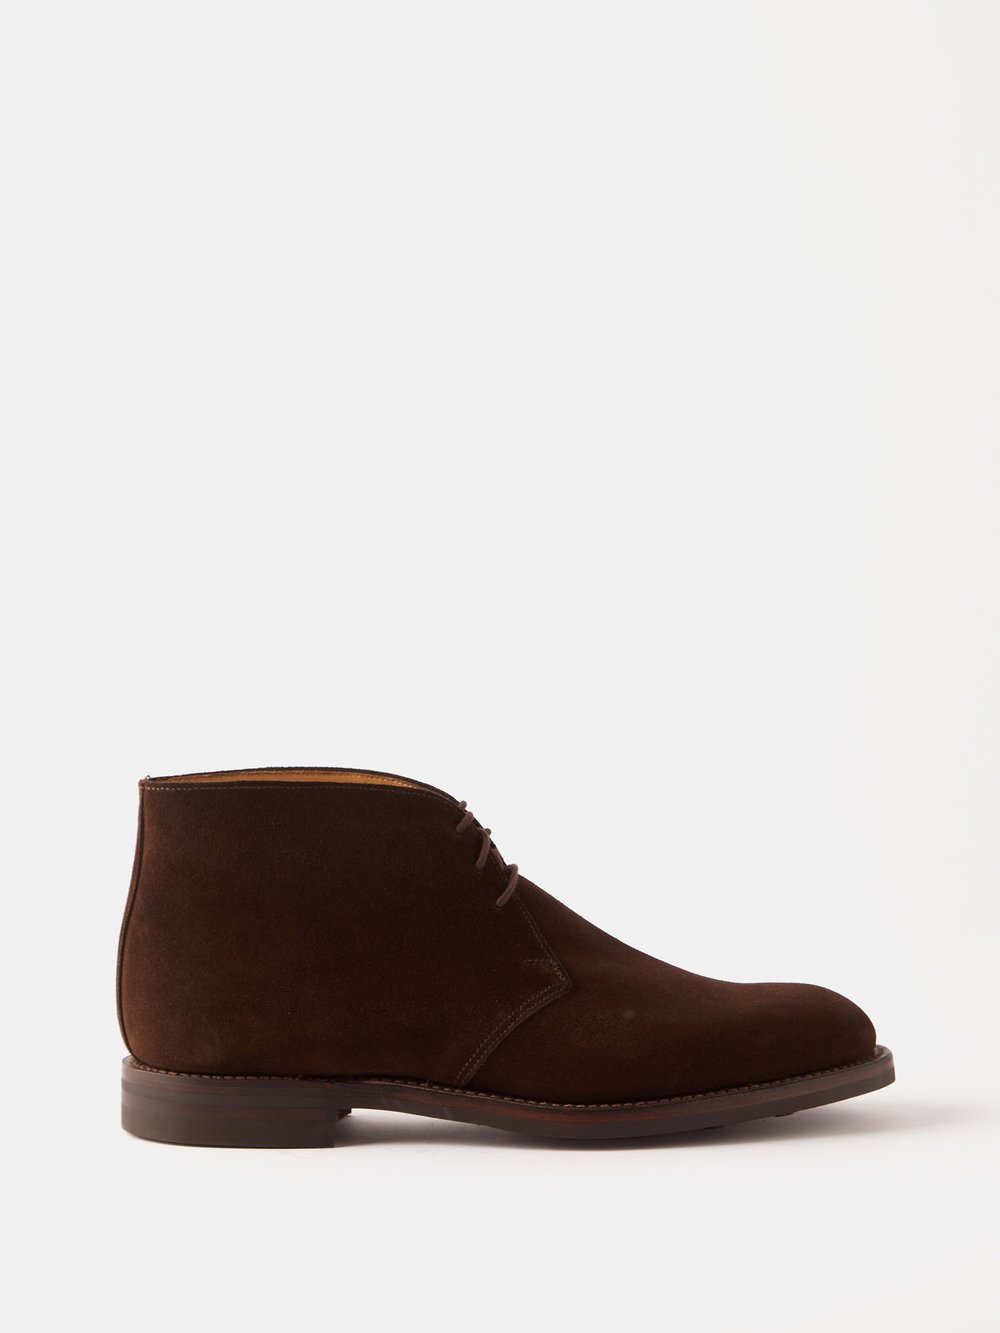 Замшевые ботинки chukka chiltern Crockett & Jones, коричневый